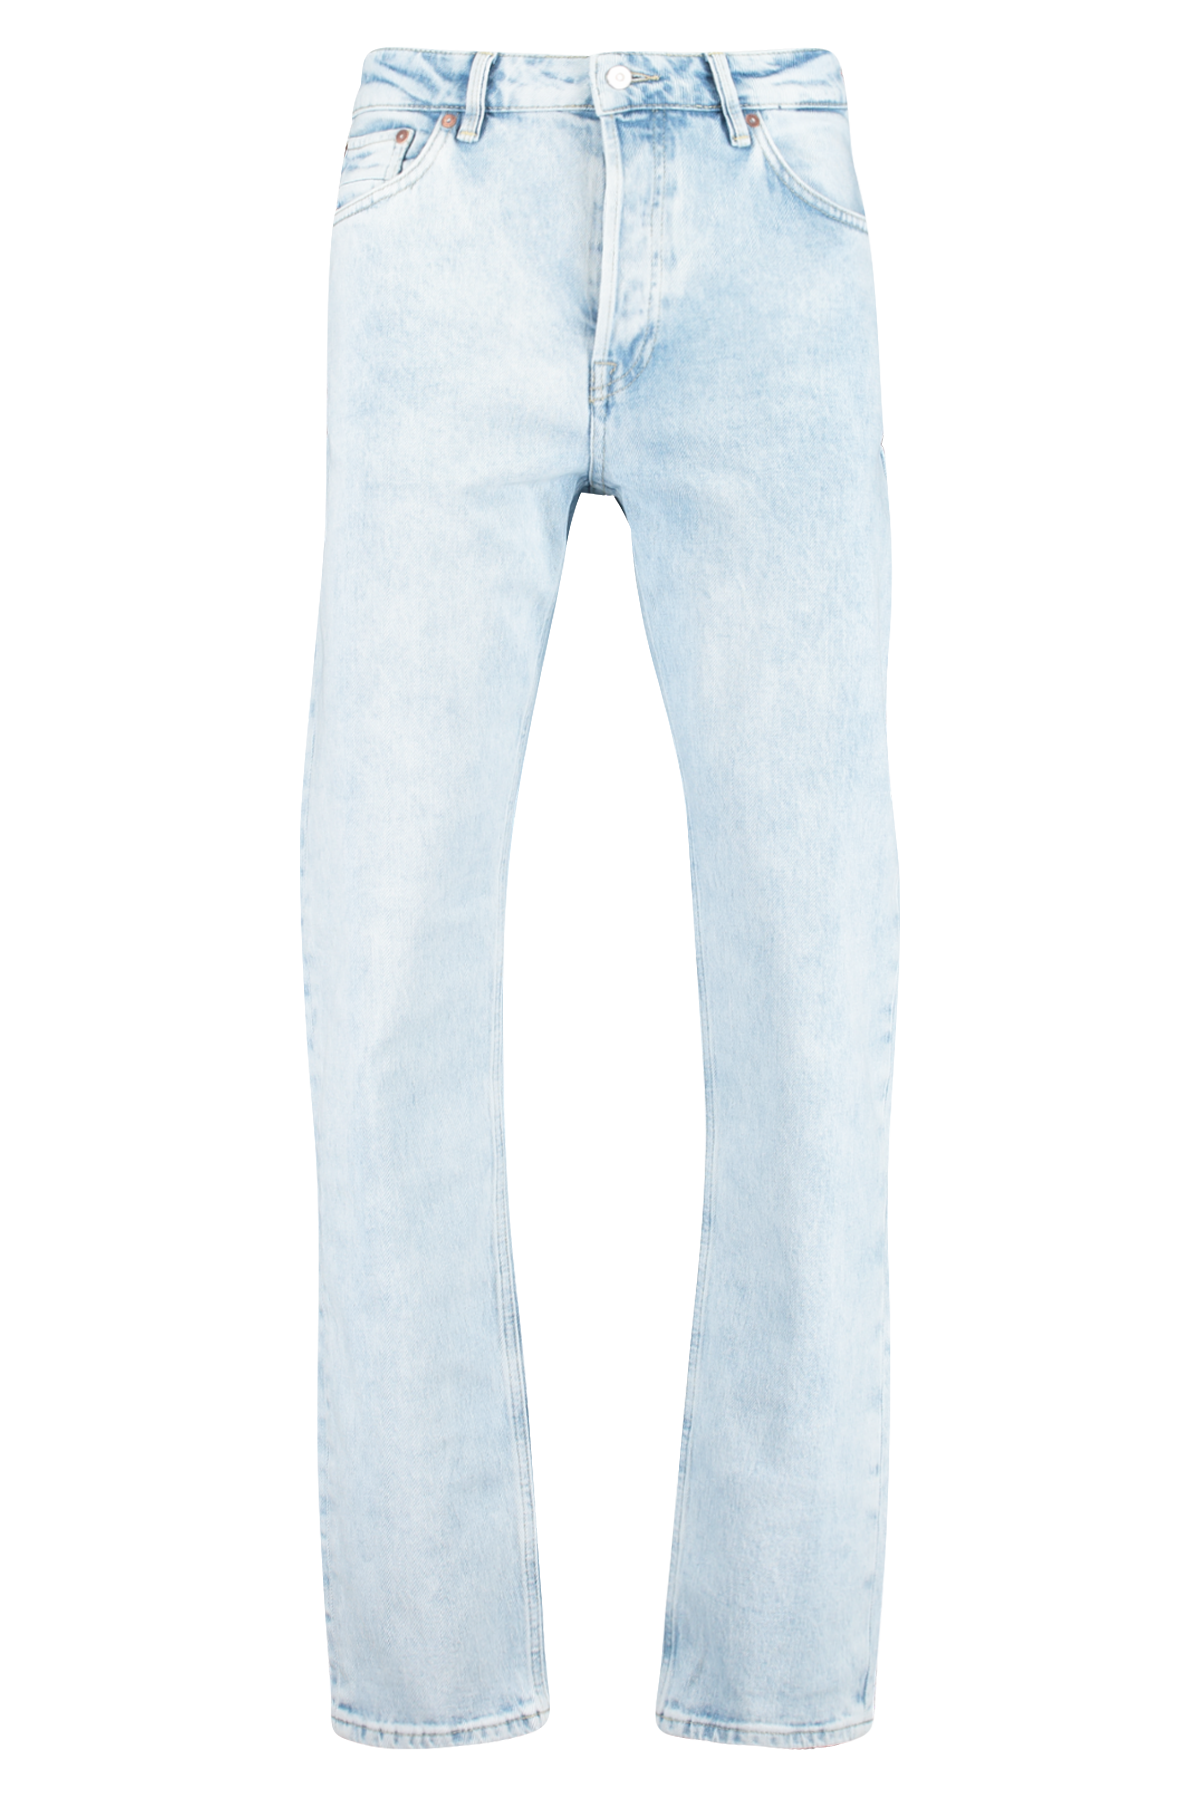 Jeans Dexter